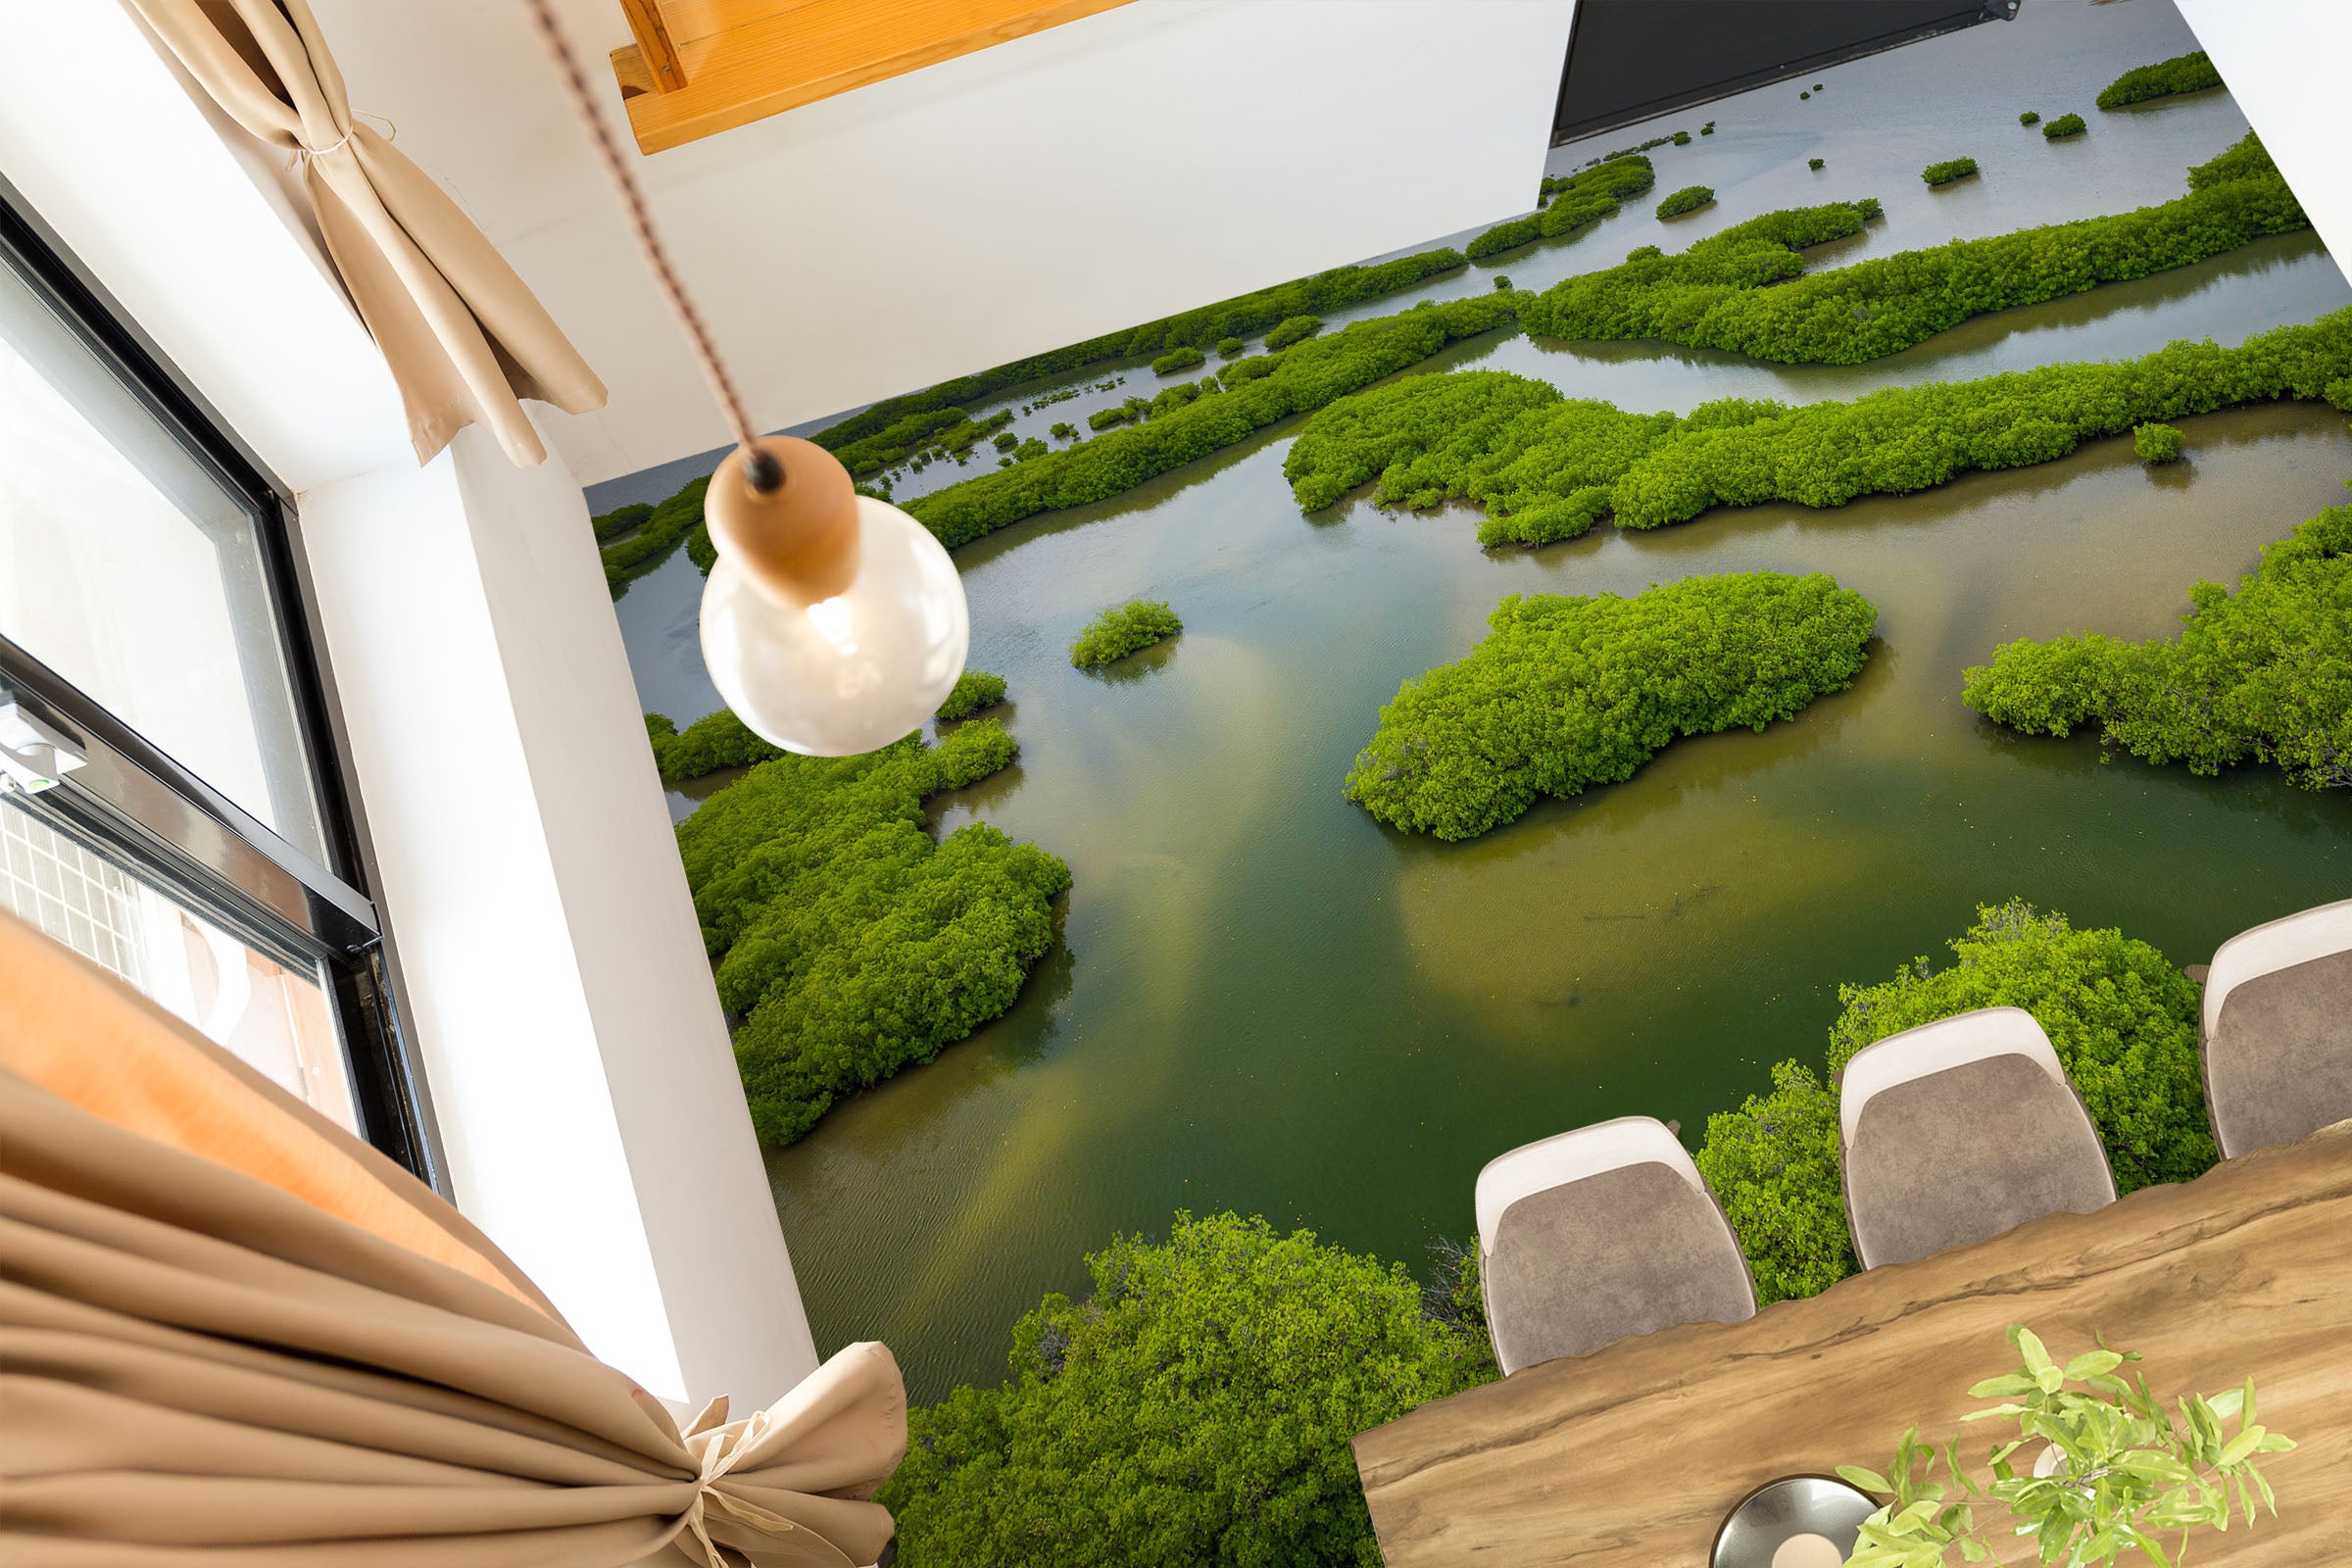 3D Distribution Of Green Plants 765 Floor Mural  Wallpaper Murals Rug & Mat Print Epoxy waterproof bath floor